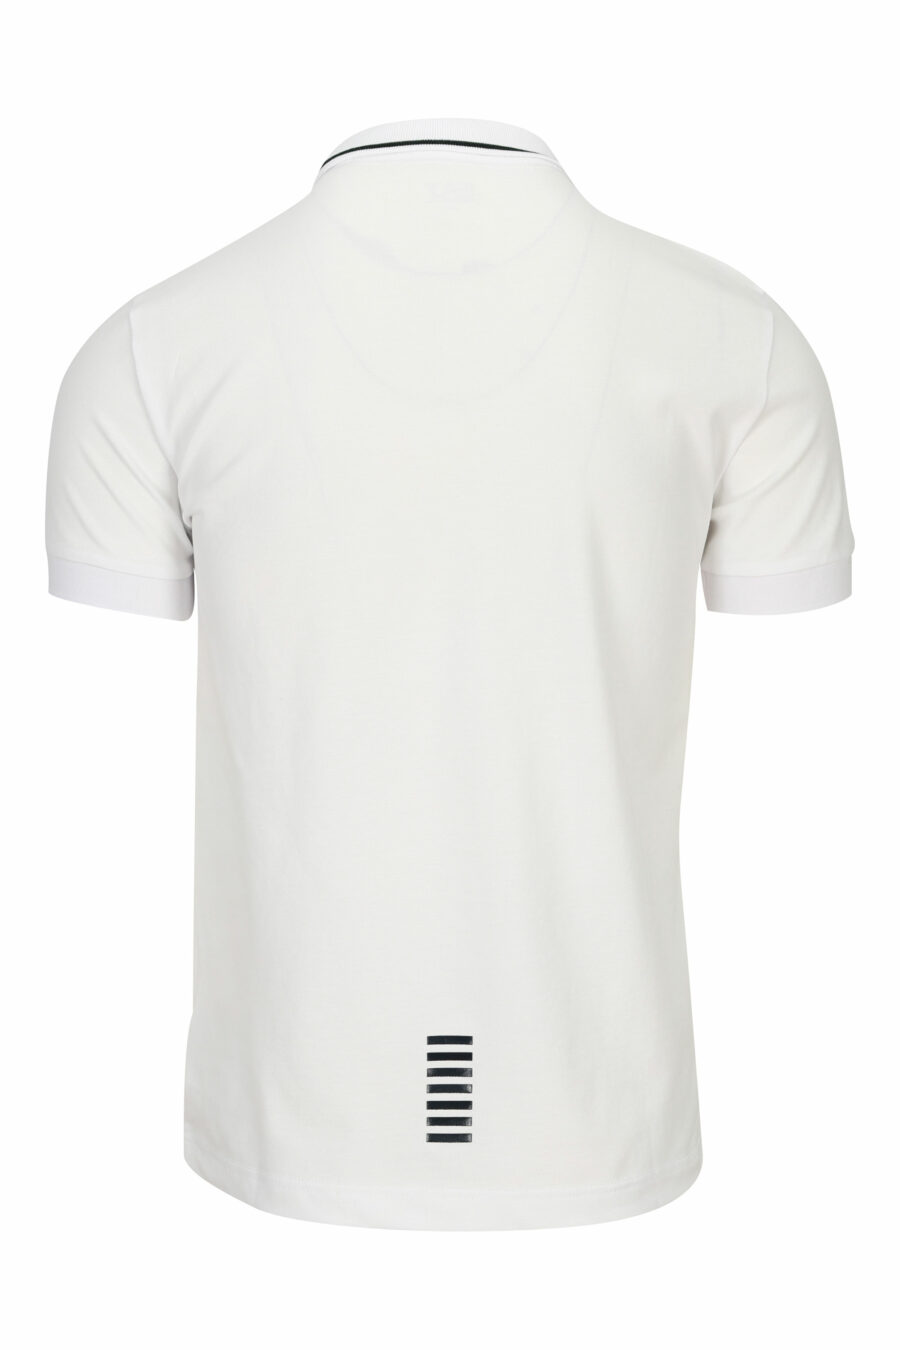 Weißes Poloshirt mit "lux identity" Minilogo und schwarzen Linien am Kragen - 8055187161060 1